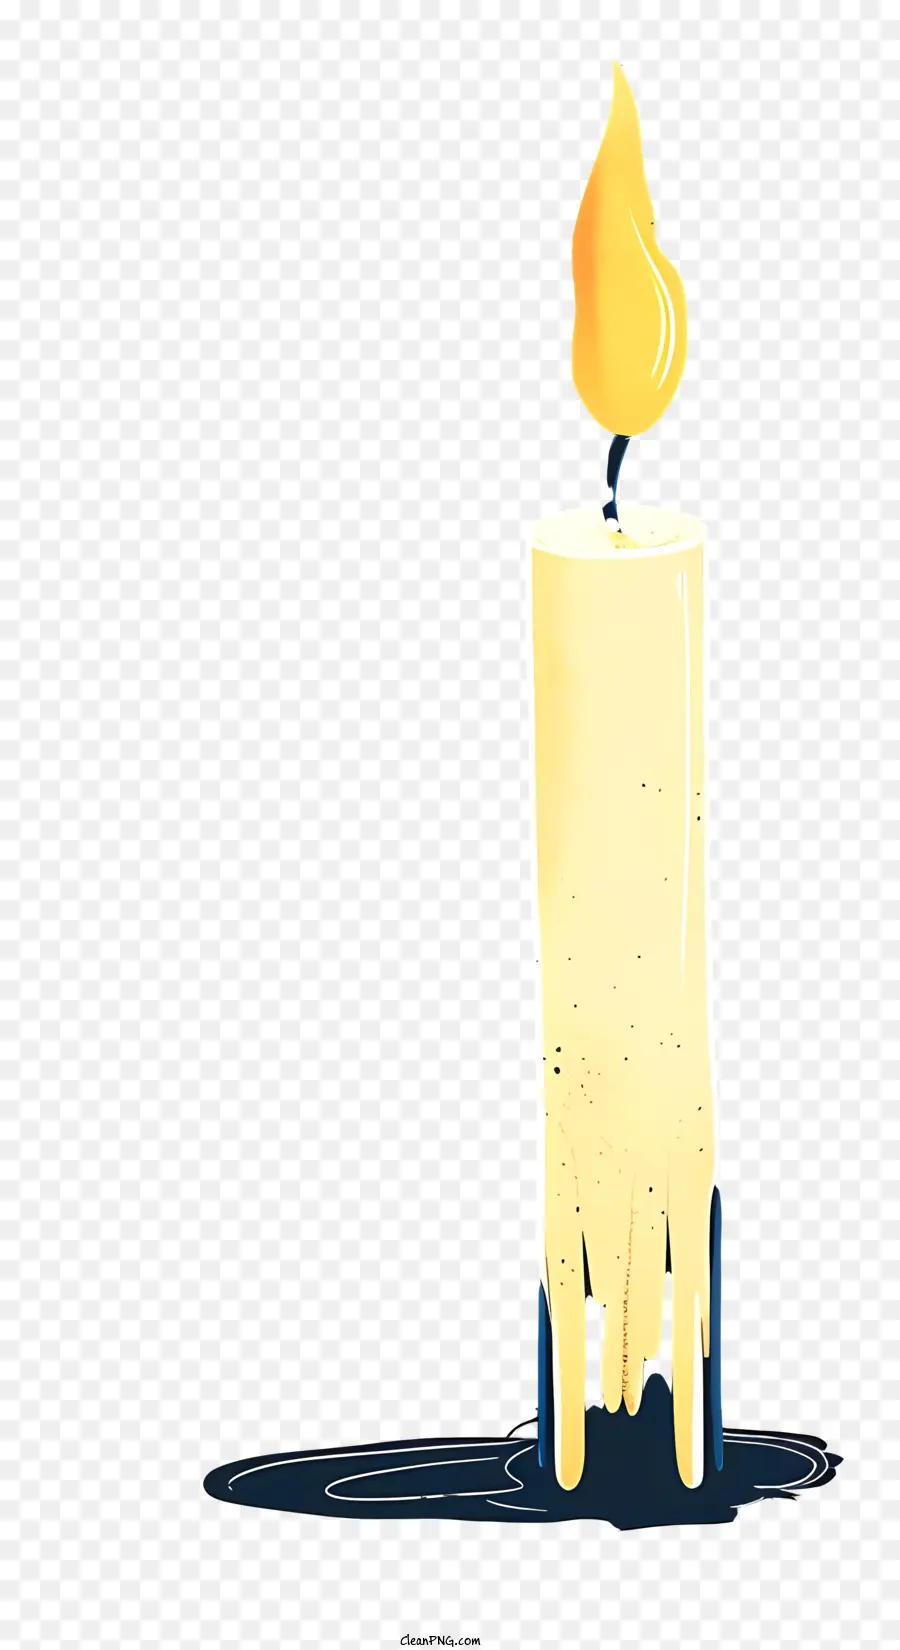 weißen hintergrund - Beleuchtete weiße Kerze mit gelber Flamme; 
tropfende Flüssigkeit